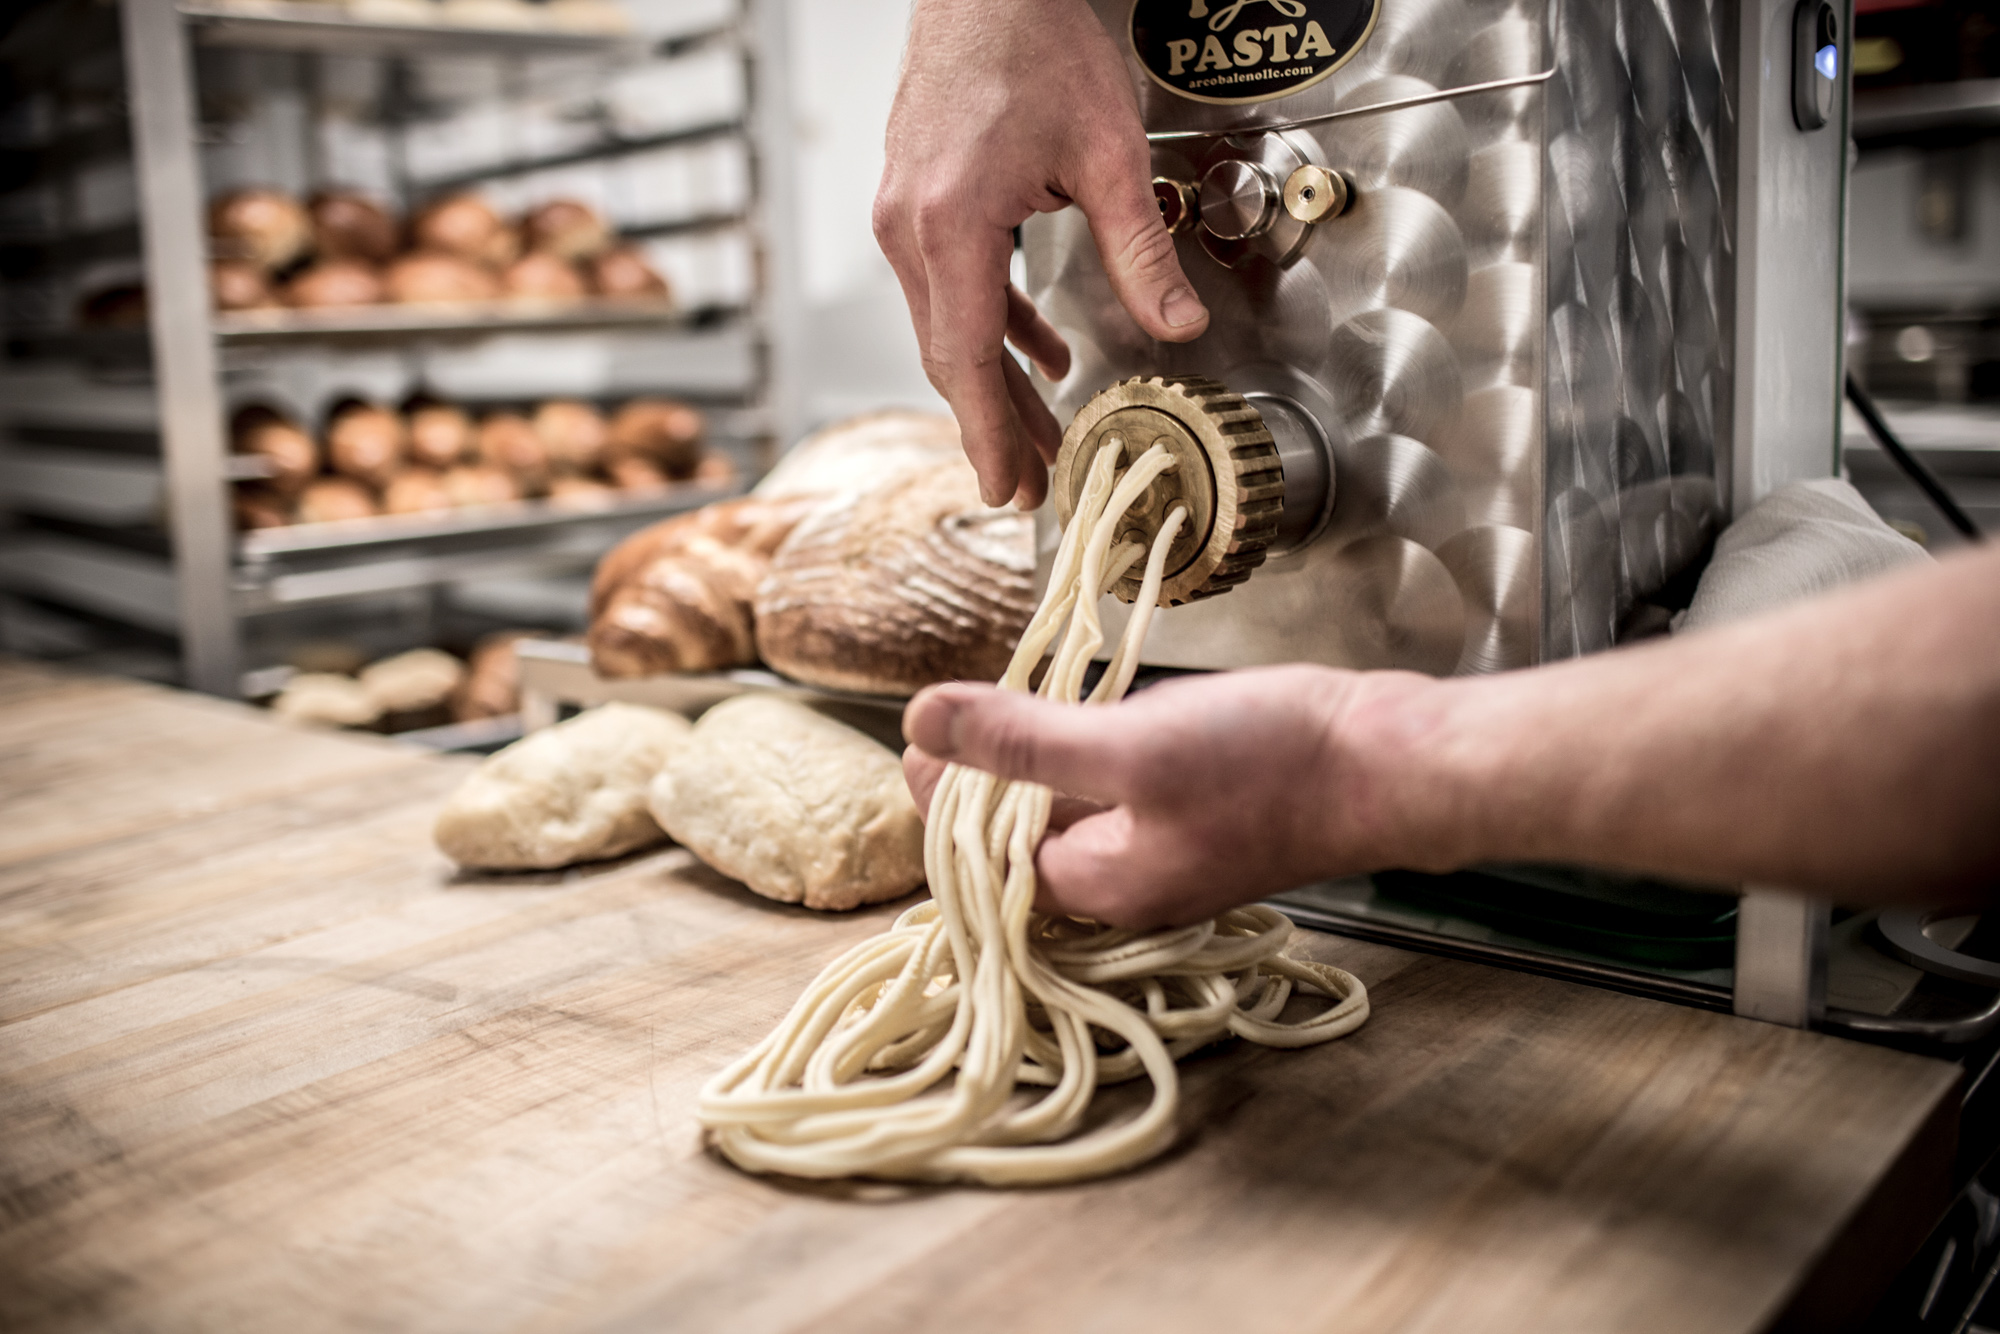 chef making pasta with pasta machine